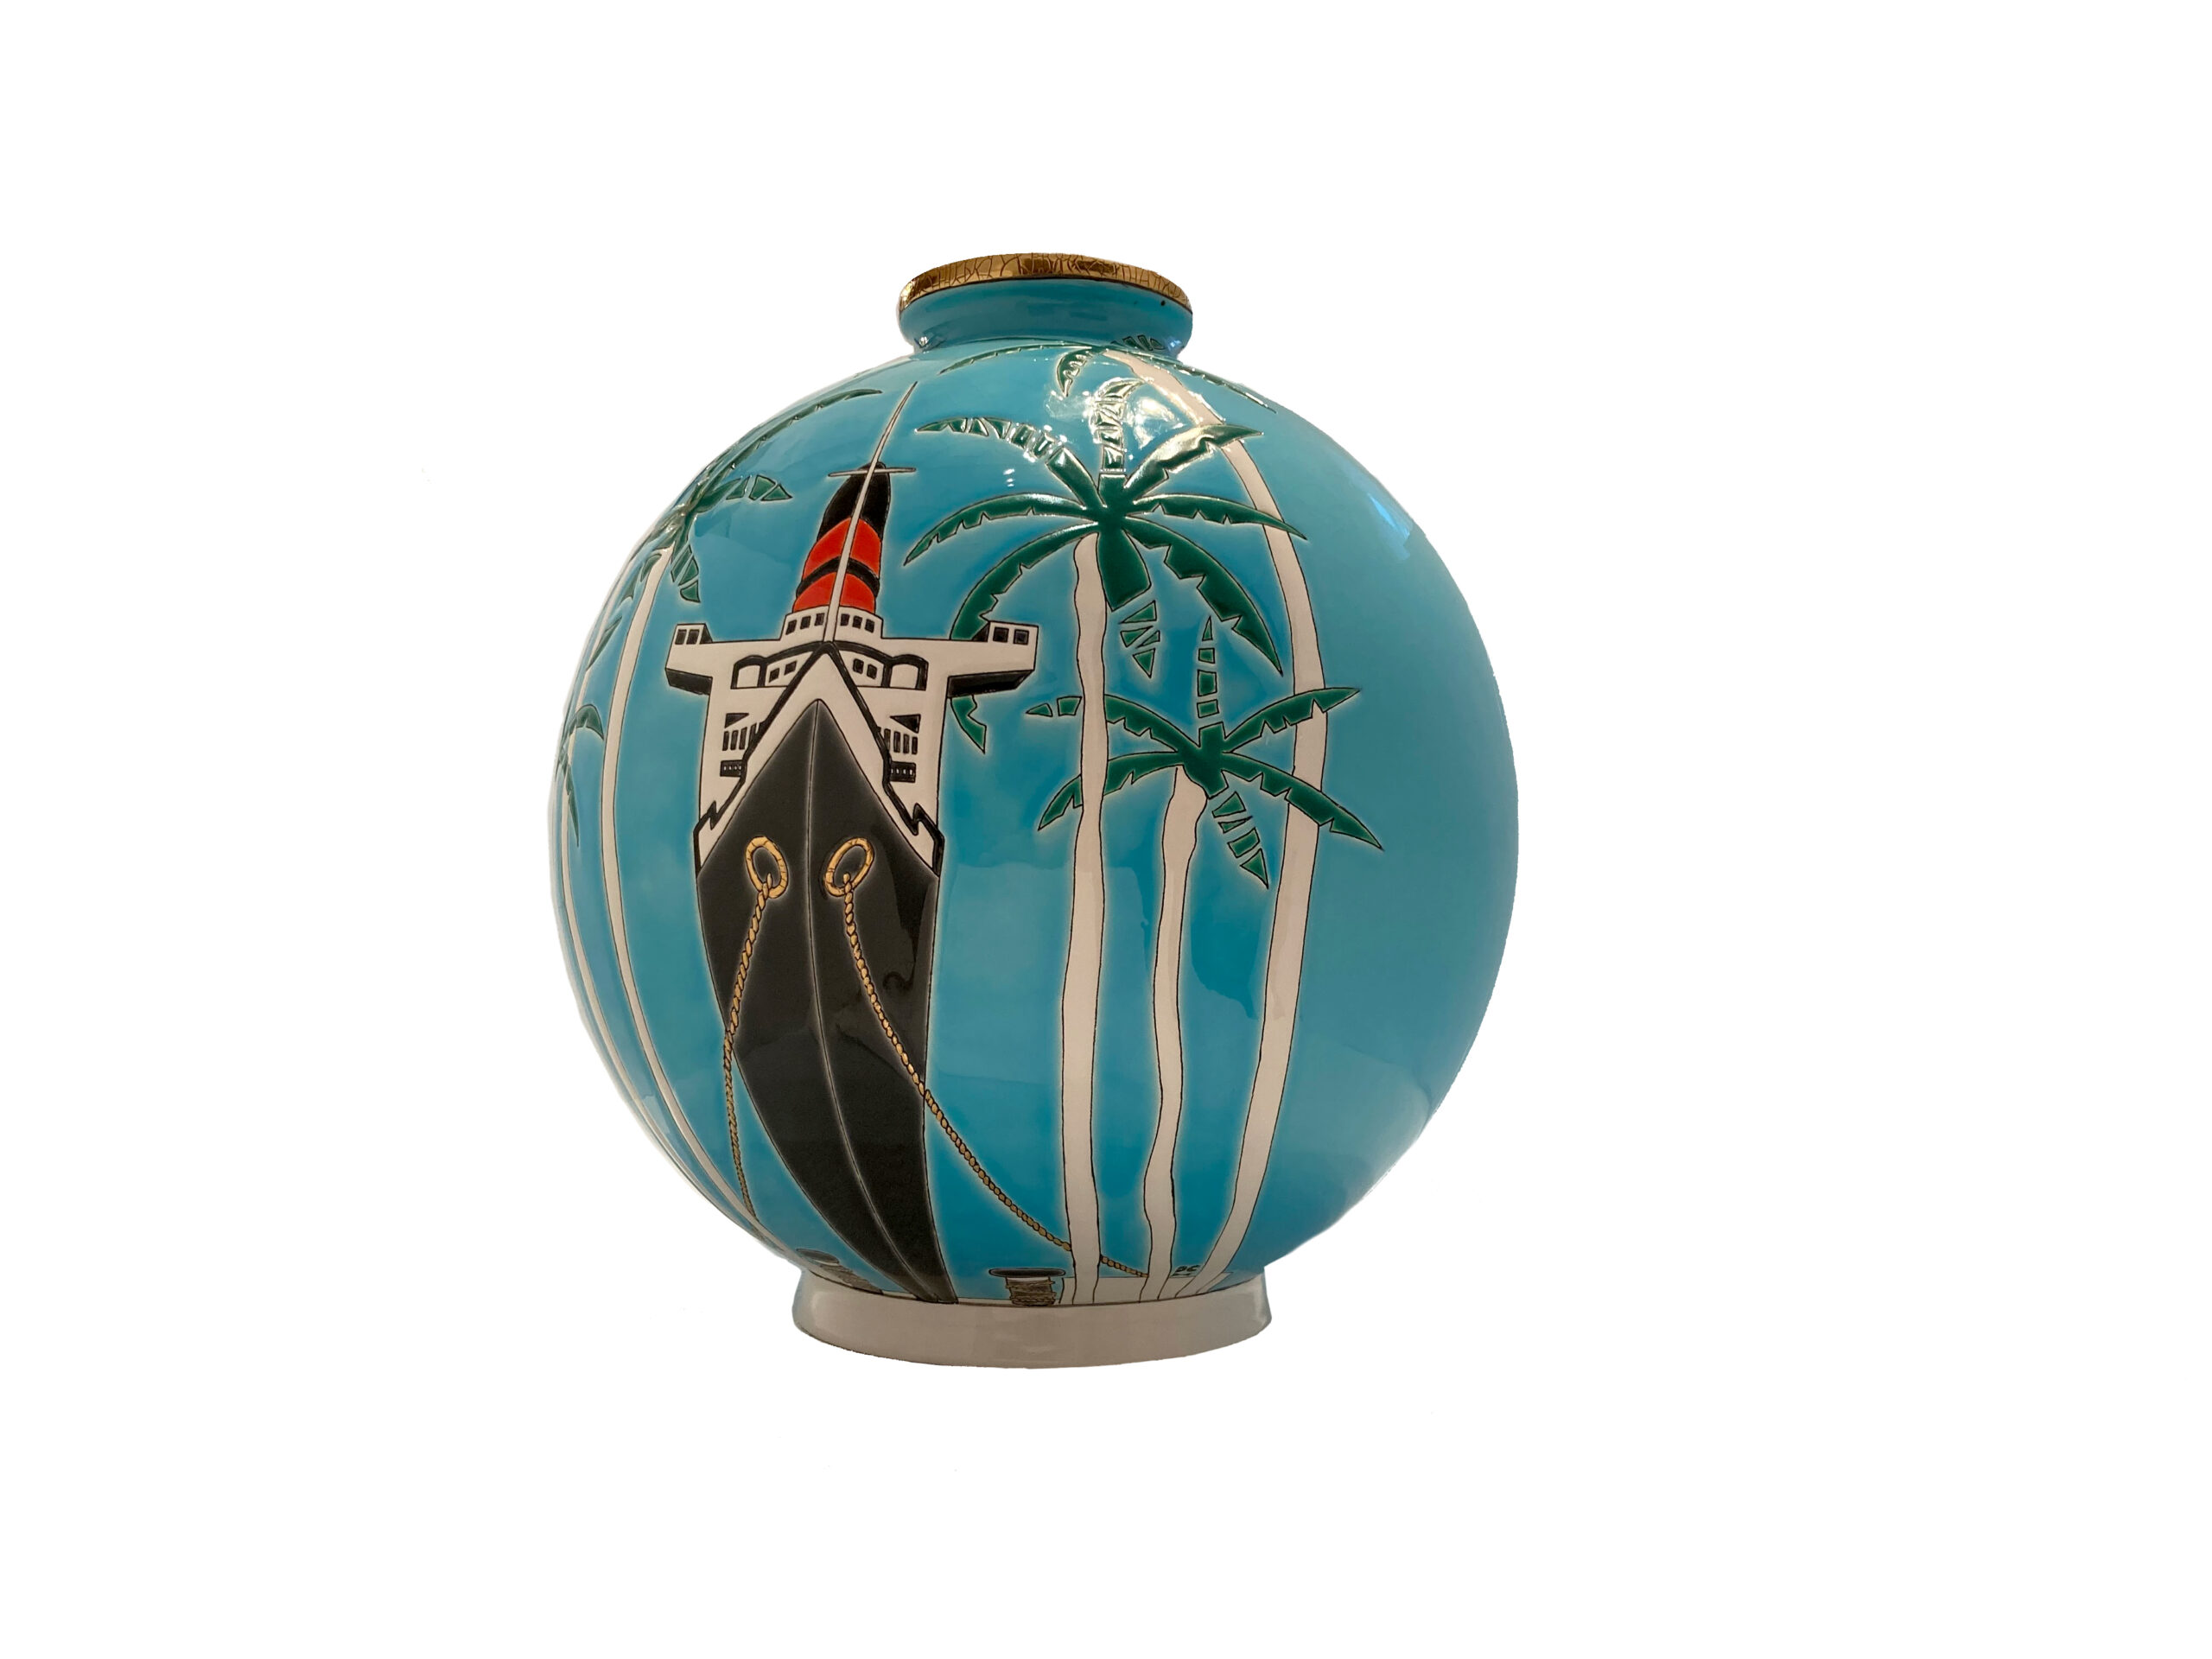 Keramik Vase aus Frankreich mit der Normandie